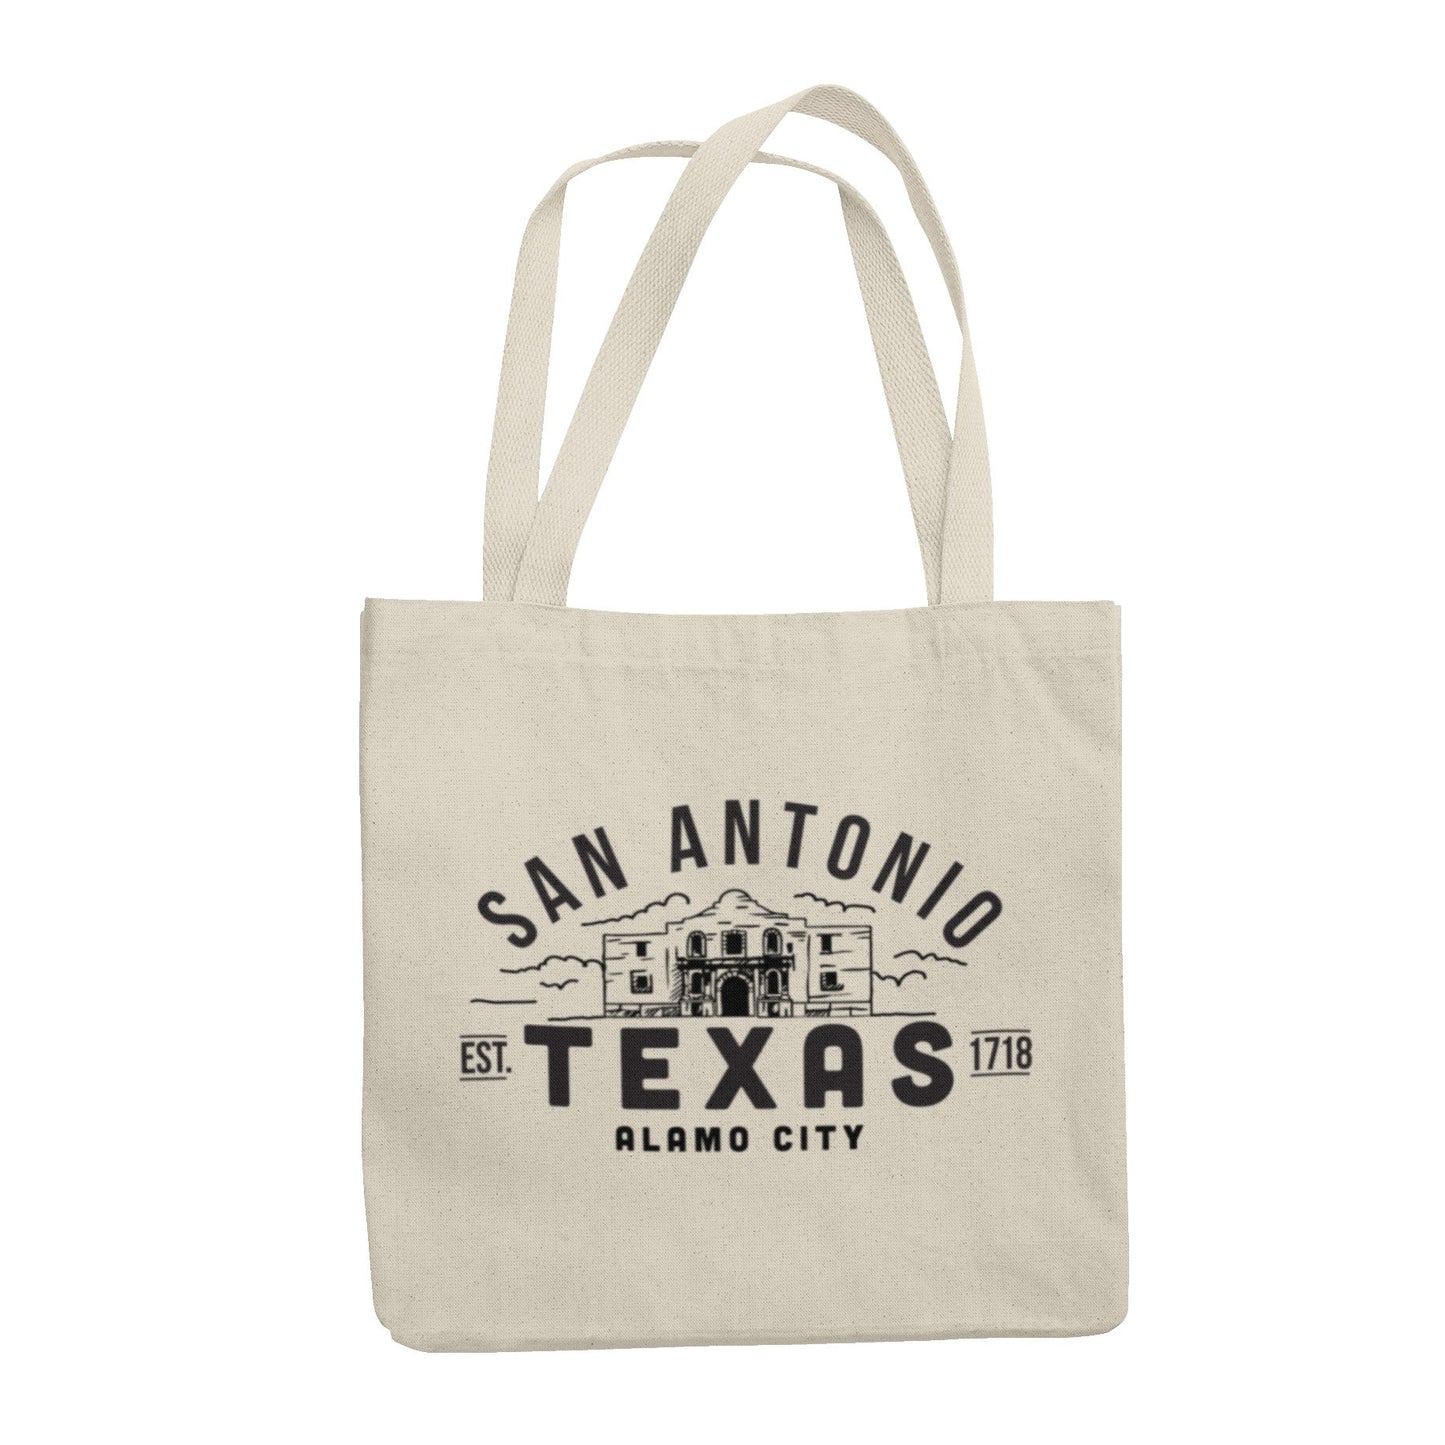 San Antonio Texas - Alamo City - Tote Bag